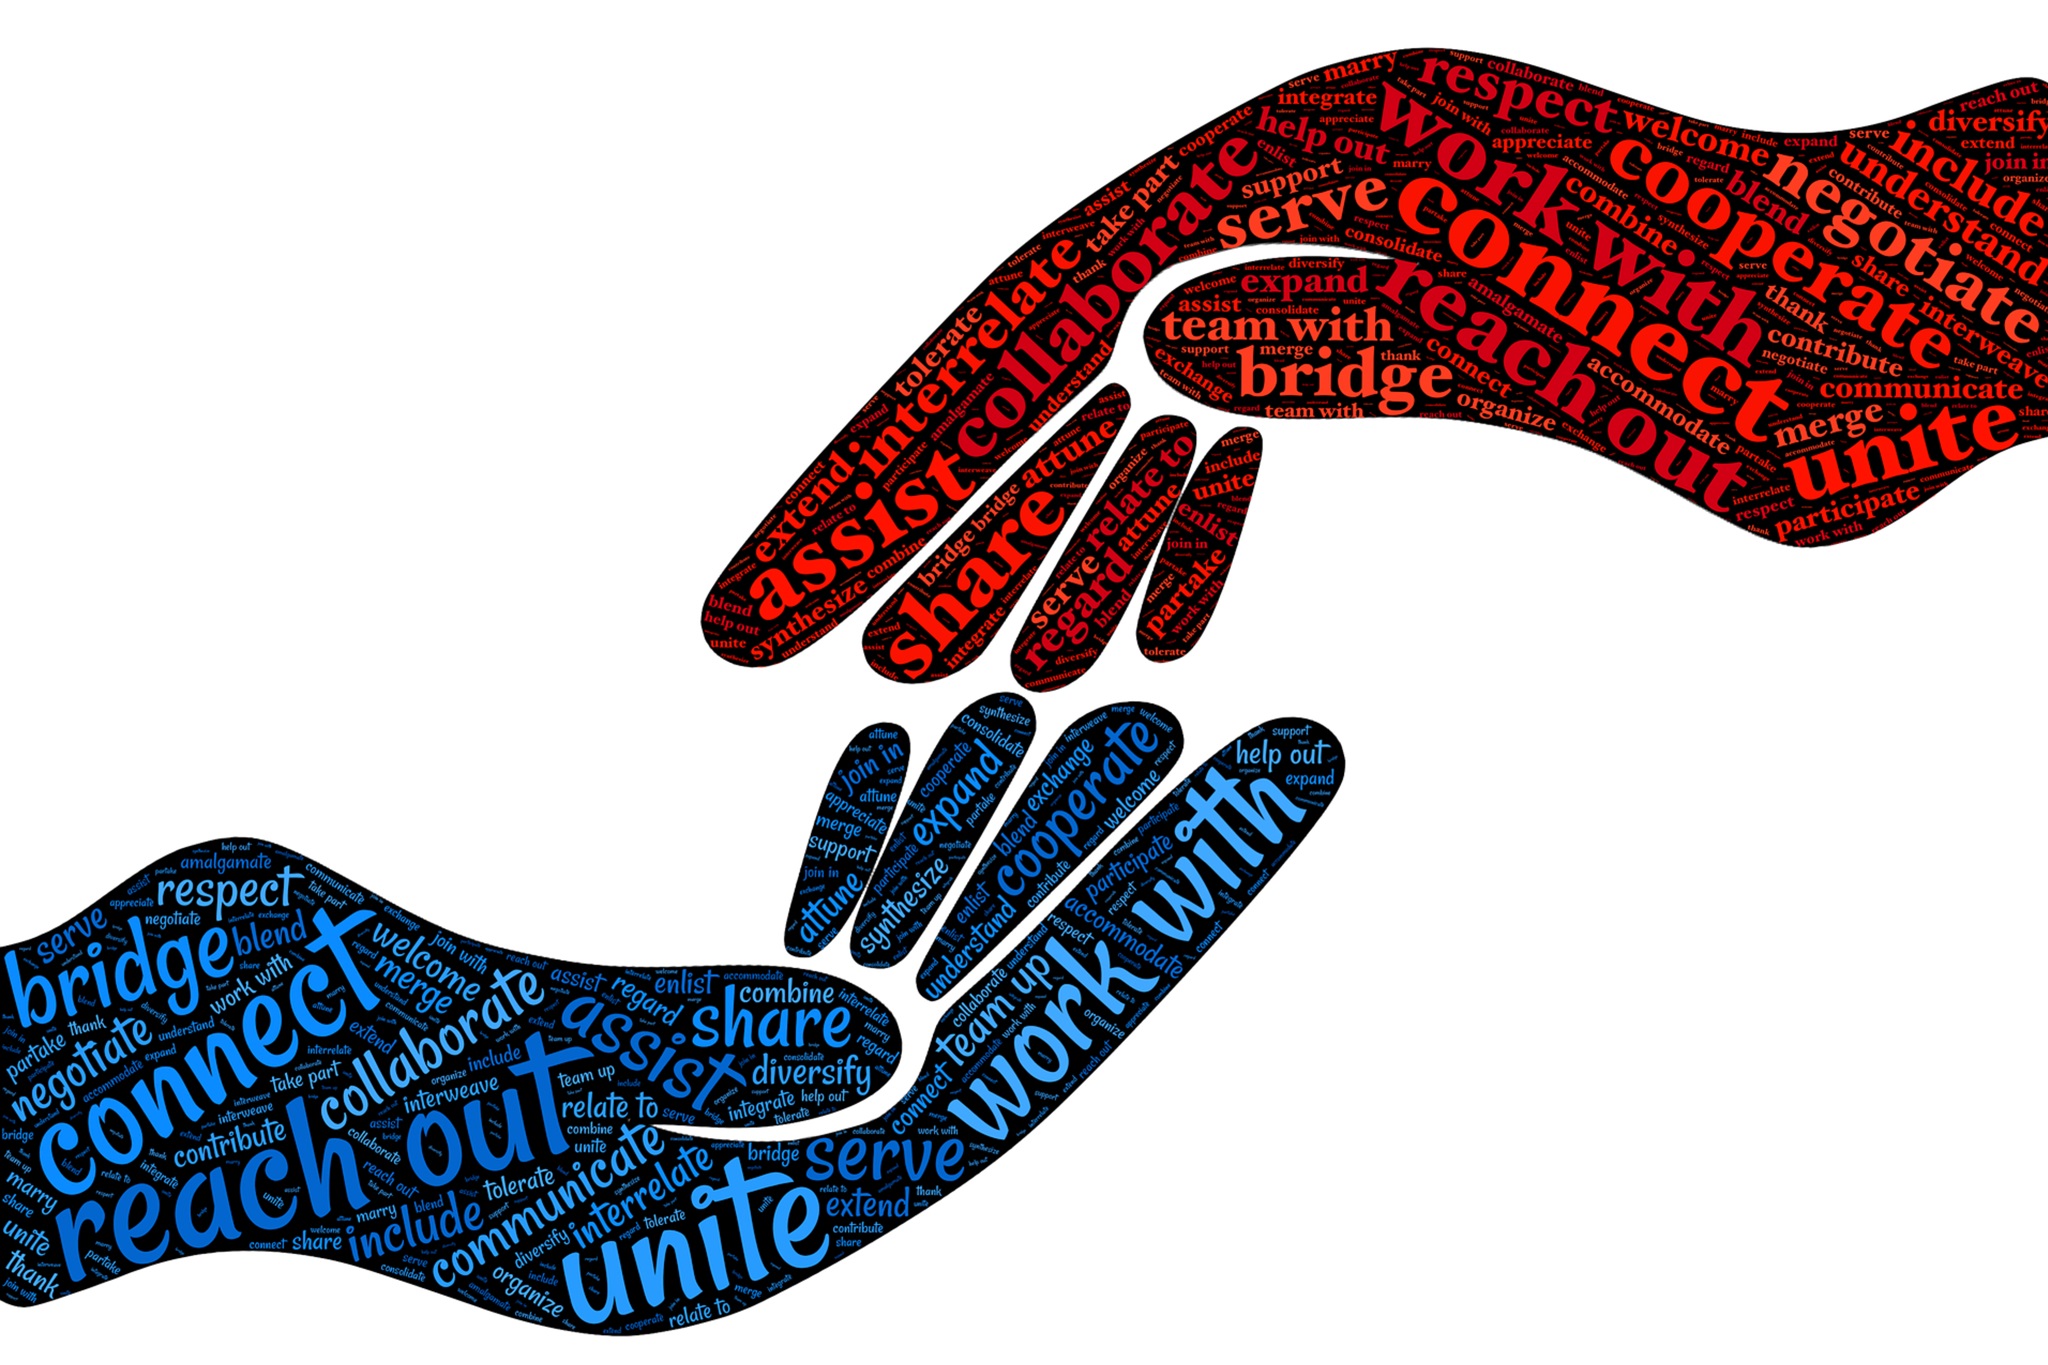 Grafik: Zwei sich zugewandten Händen mit tag-cloud "cooperate" ausgefüllt. Bildnachweis: johnhain auf pixabay, https://pixabay.com/de/illustrations/kooperieren-zusammenarbeiten-2924261/